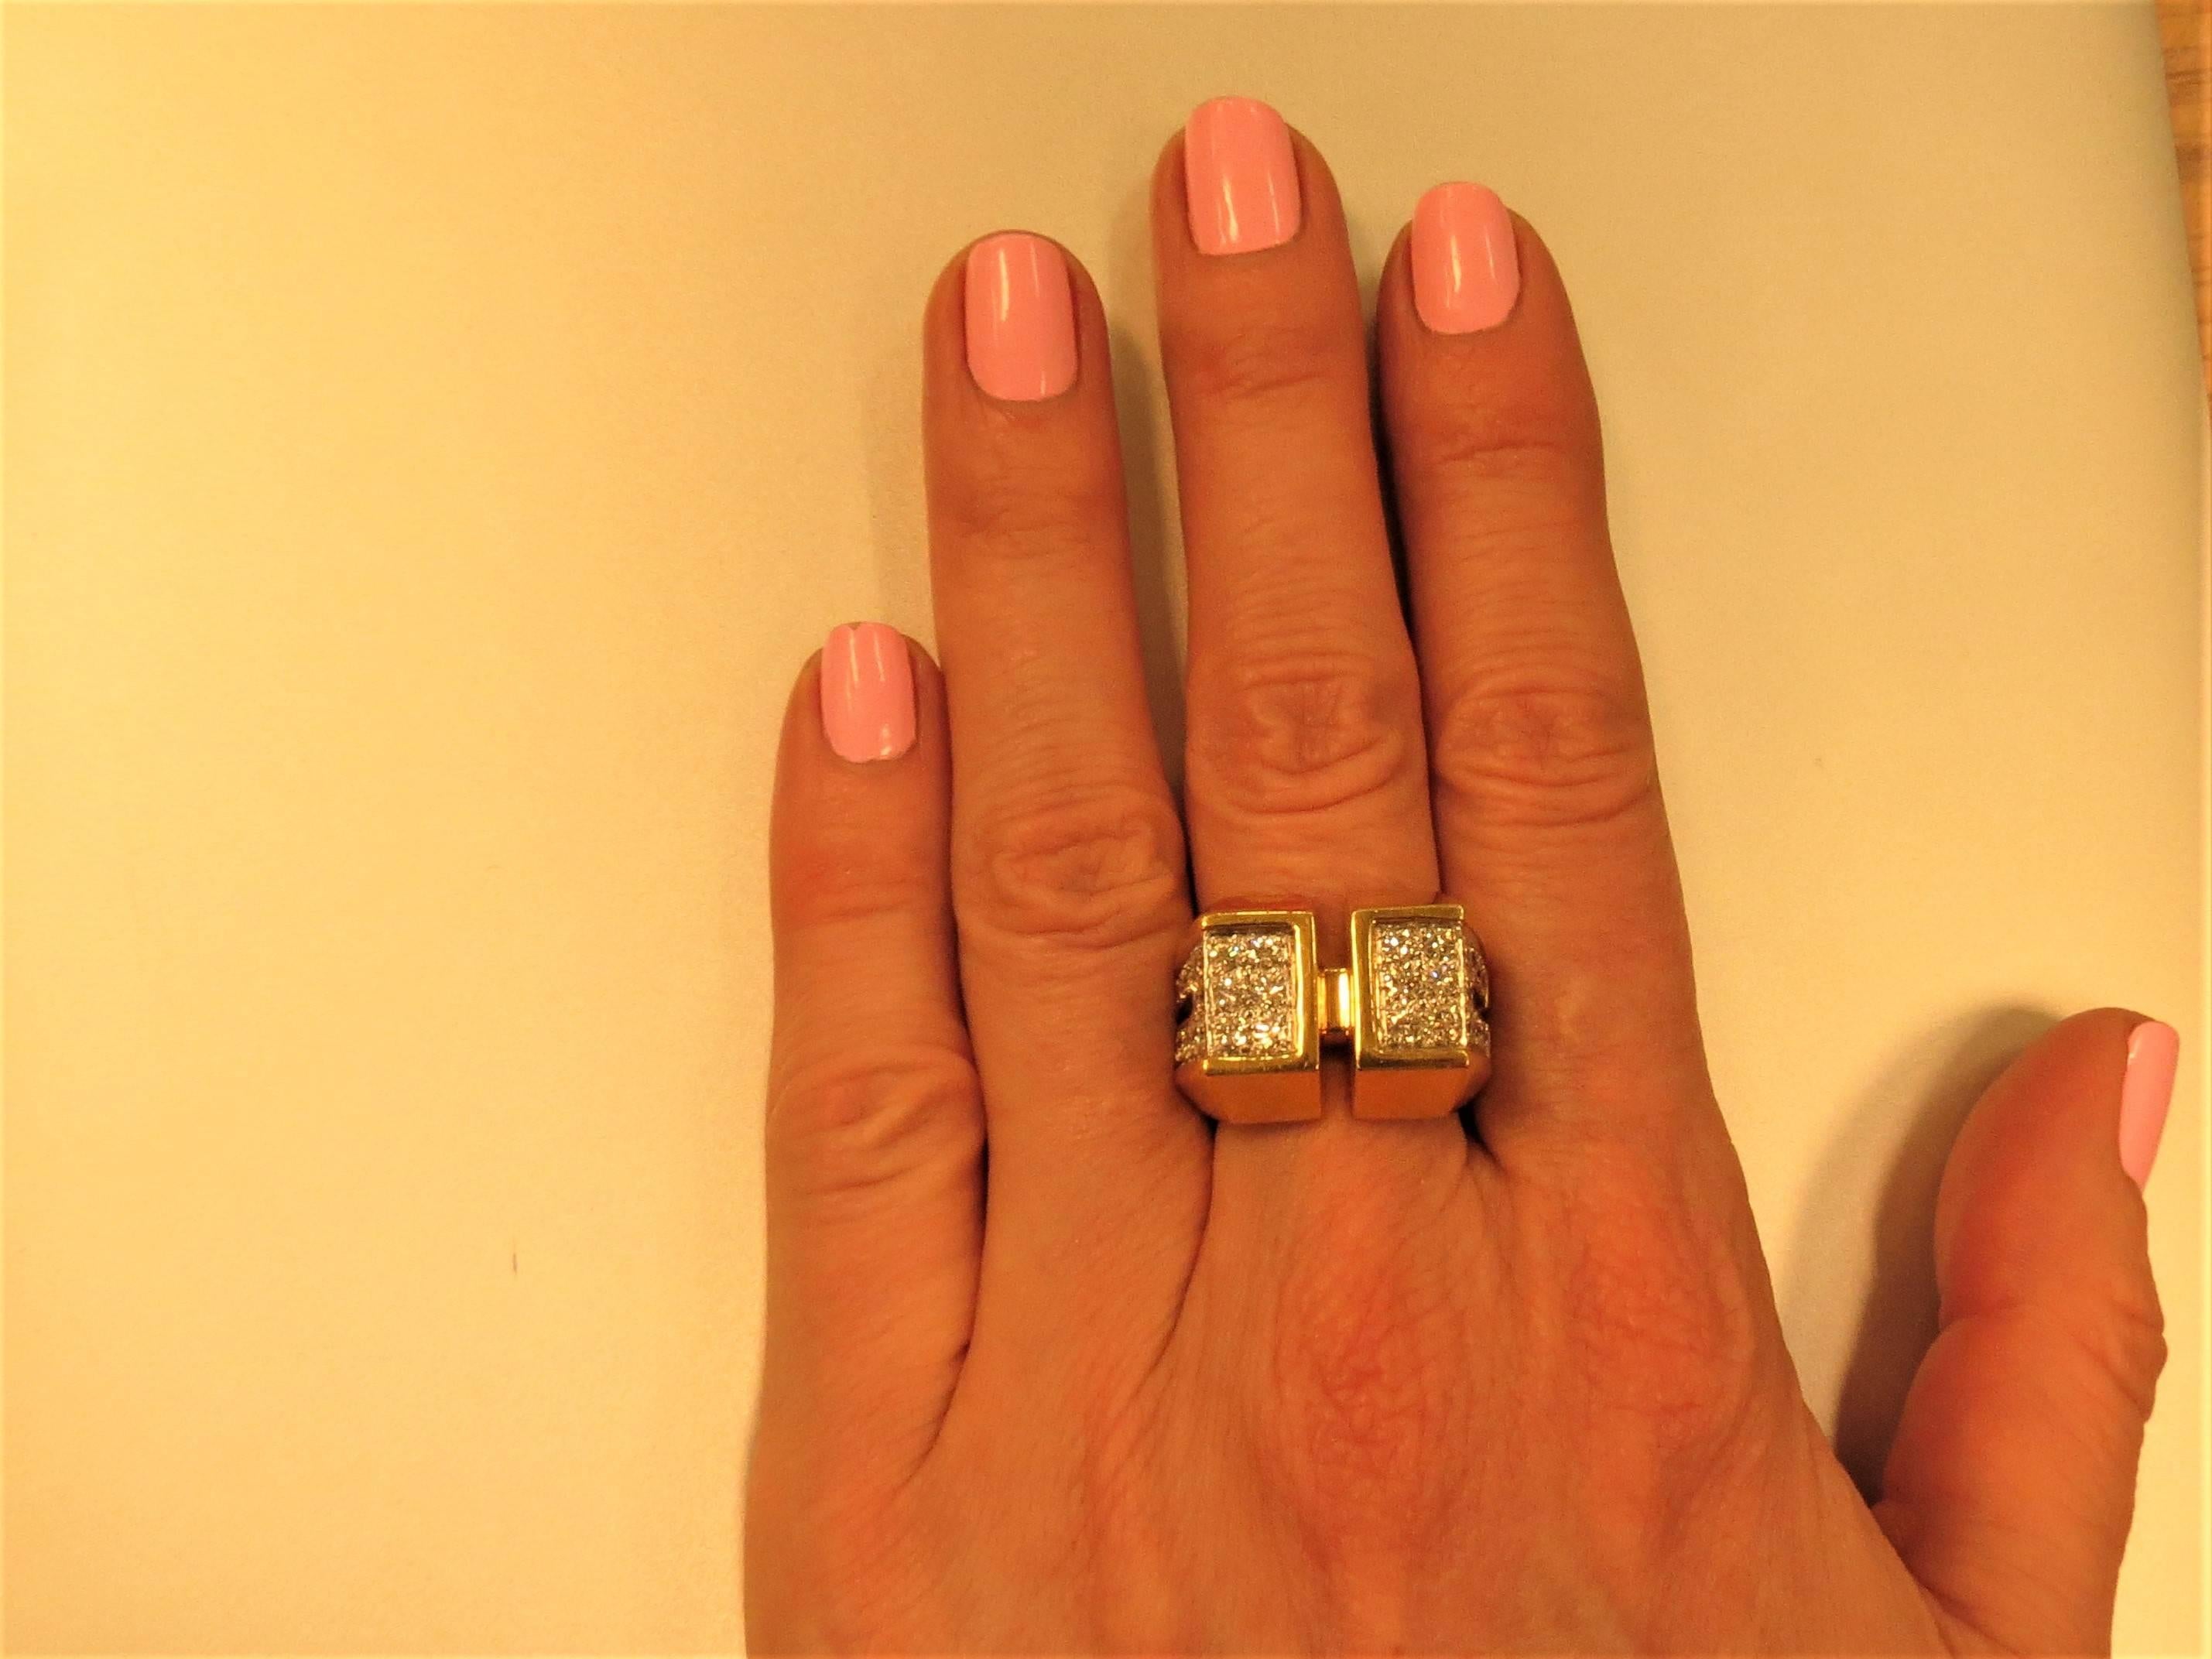 Fabelhafter Ring Montreaux aus 18 Karat Gelbgold, in Platin gefasst mit 30 runden Diamanten im Vollschliff  mit einem Gesamtgewicht von 1,45cts, Farbe D-E,  VVS-Klarheit.
Fingergröße 6,5